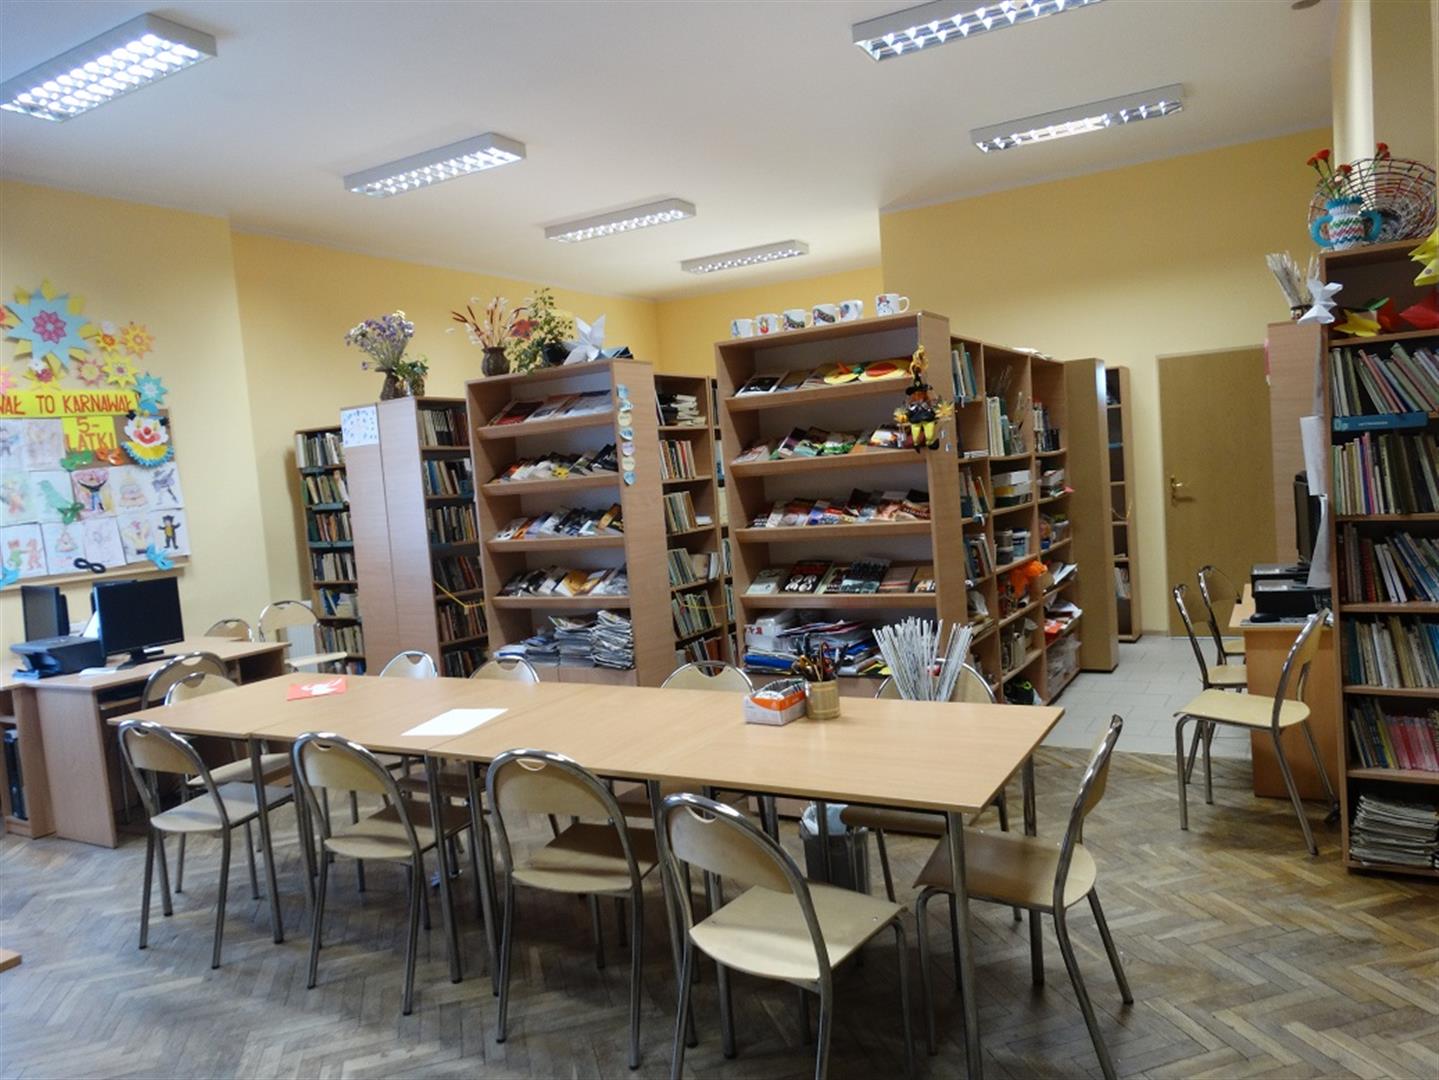 Multicentrum poleca - Kurnik.pl - Biblioteka Publiczna w Piasecznie